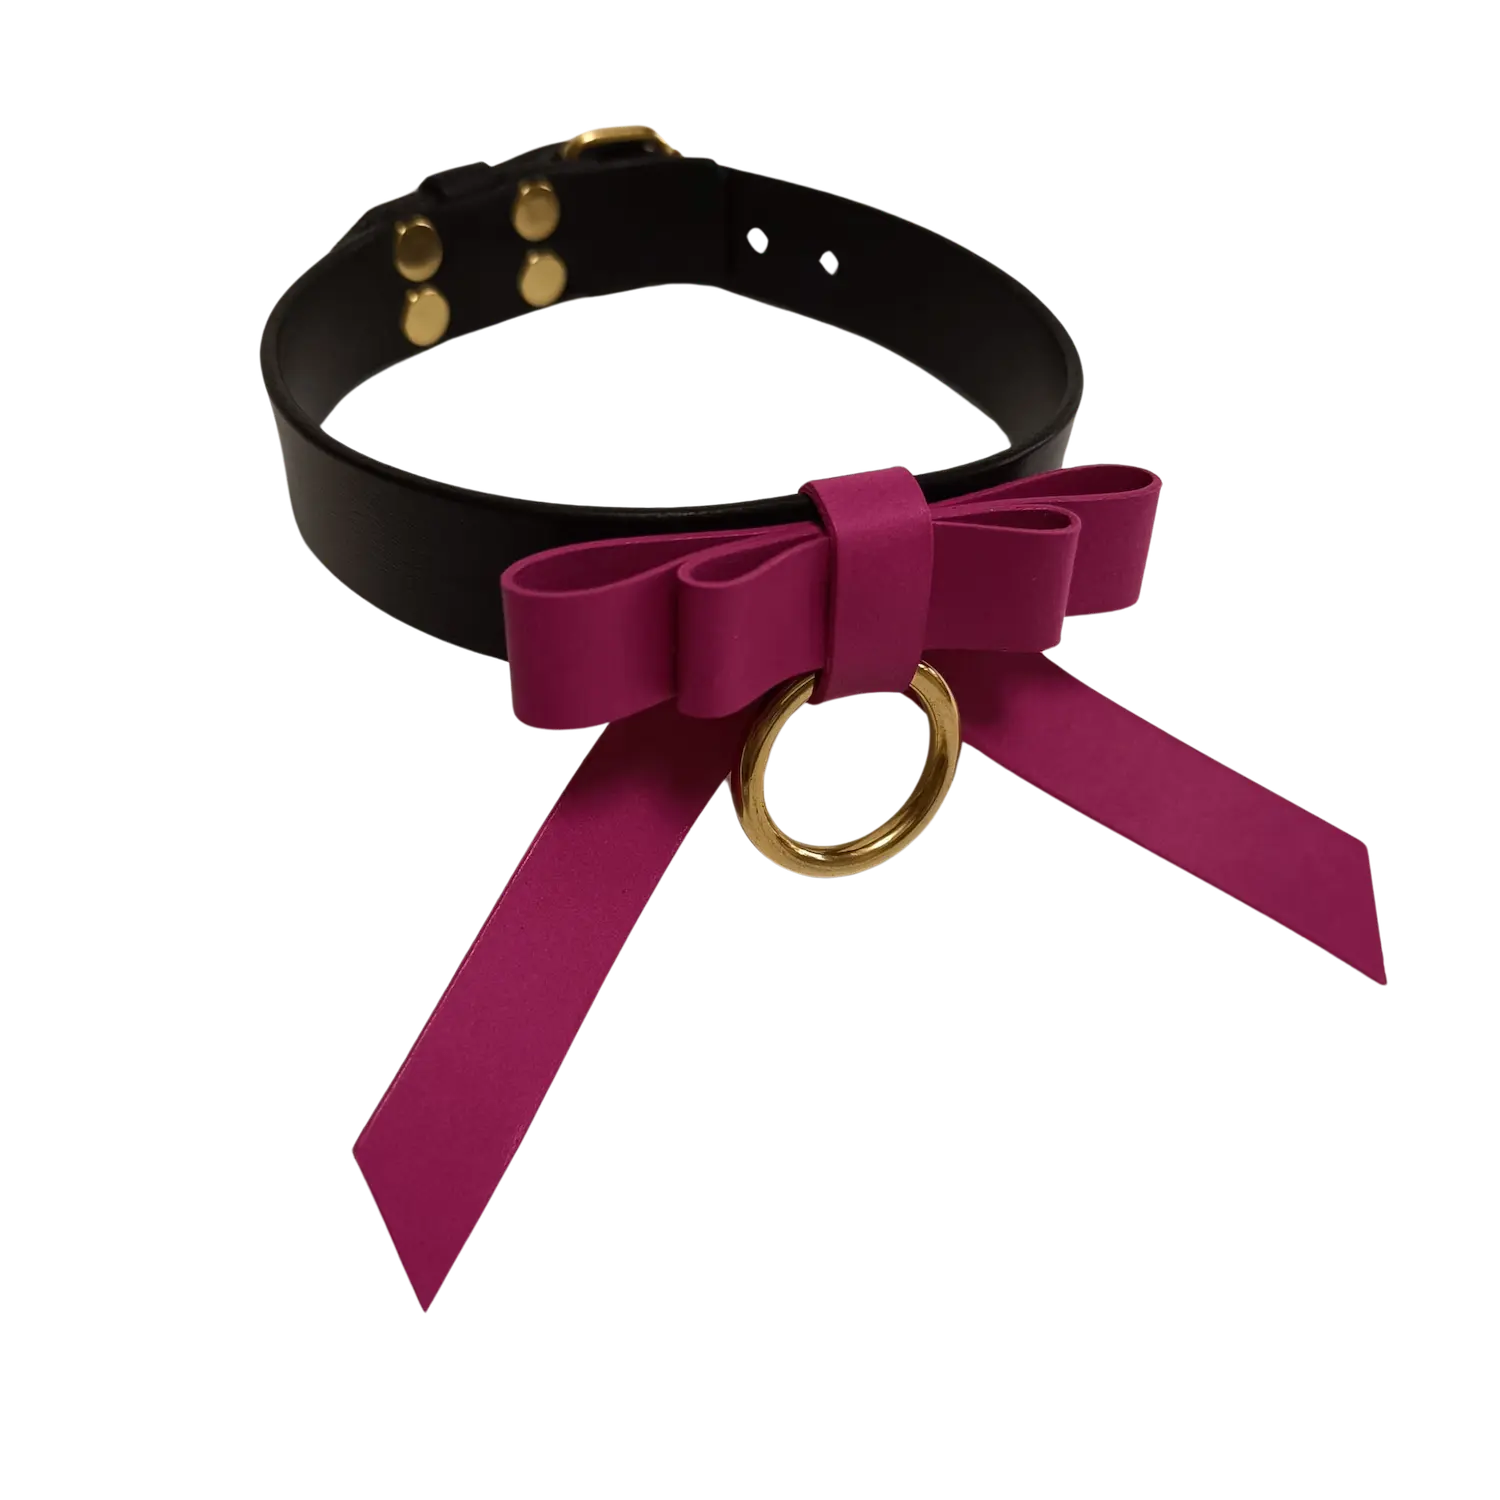 Luxusní dámský choker z černé a růžové kůže s mašlí a kroužkem. Cena 2000 Kč